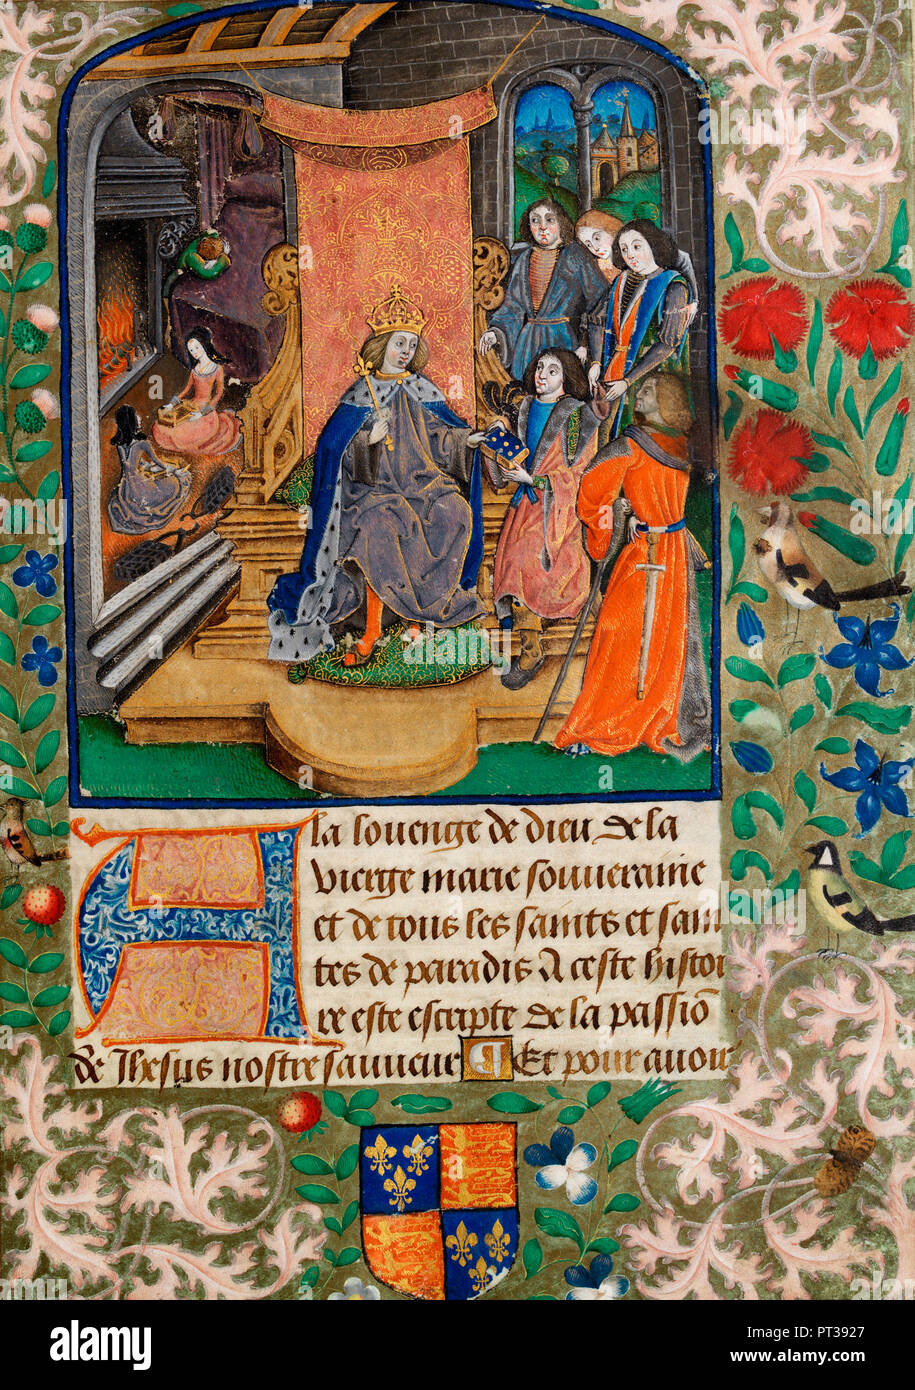 Henry VII empfangen (dieses) Manuskript als Geschenk. Im Hintergrund links oben ist Heinrich VIII. als Kind weinend über den Tod seiner Mutter. Seine Schwestern, Mary und Margaret sitzen im Vordergrund - Vaux Passional, ca. 1503 Stockfoto